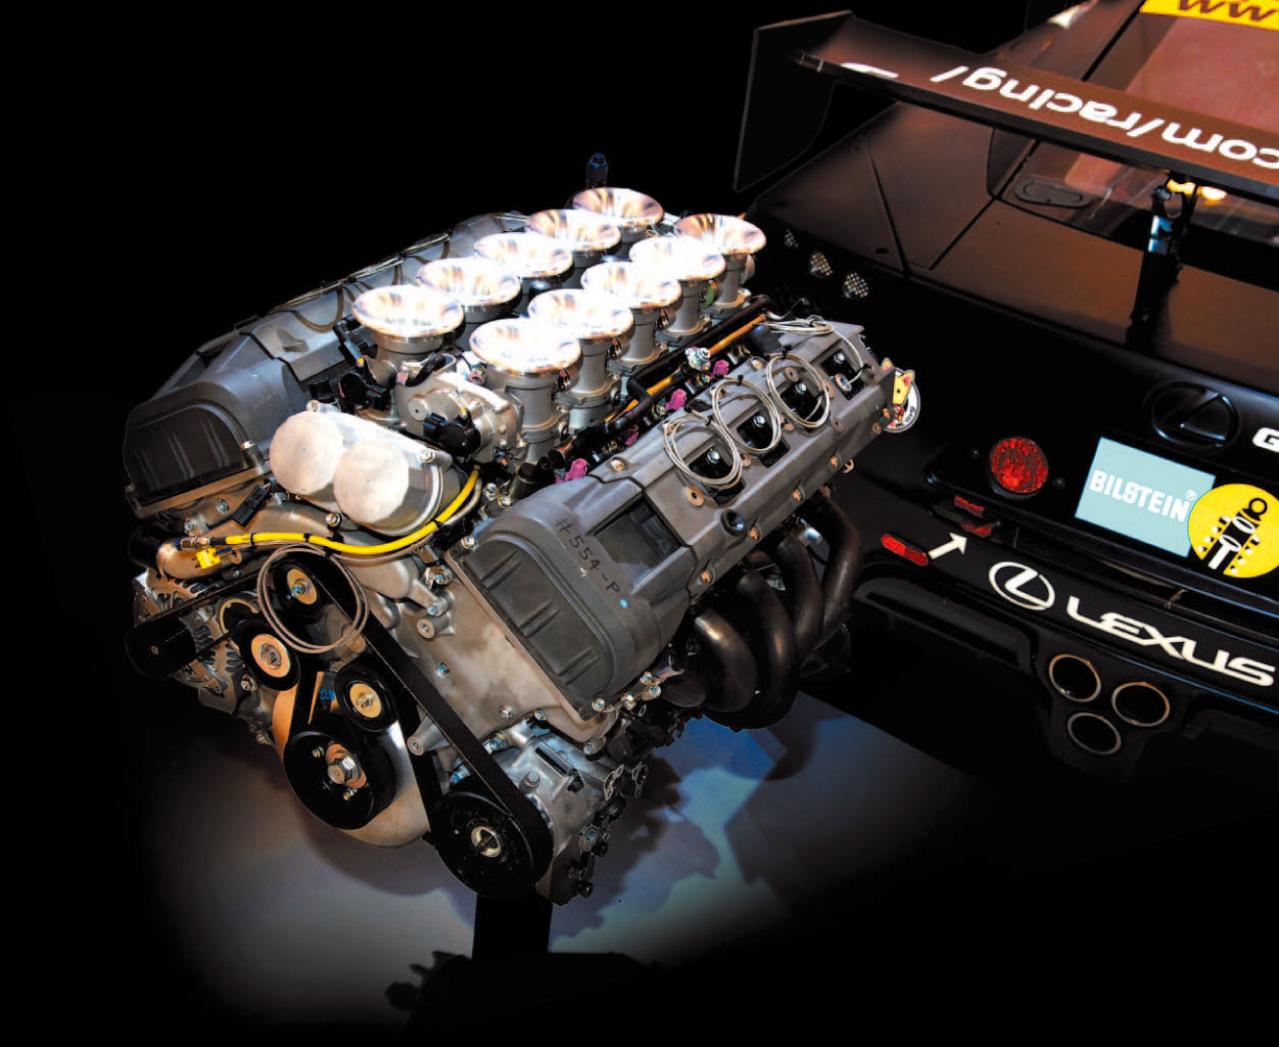 内燃機関超基礎講座 レースエンジン屋魂で開発した量産v10 トヨタ1lr Gue レクサスlfa クーペ スポーツカー Motor Fantech モーターファンテック